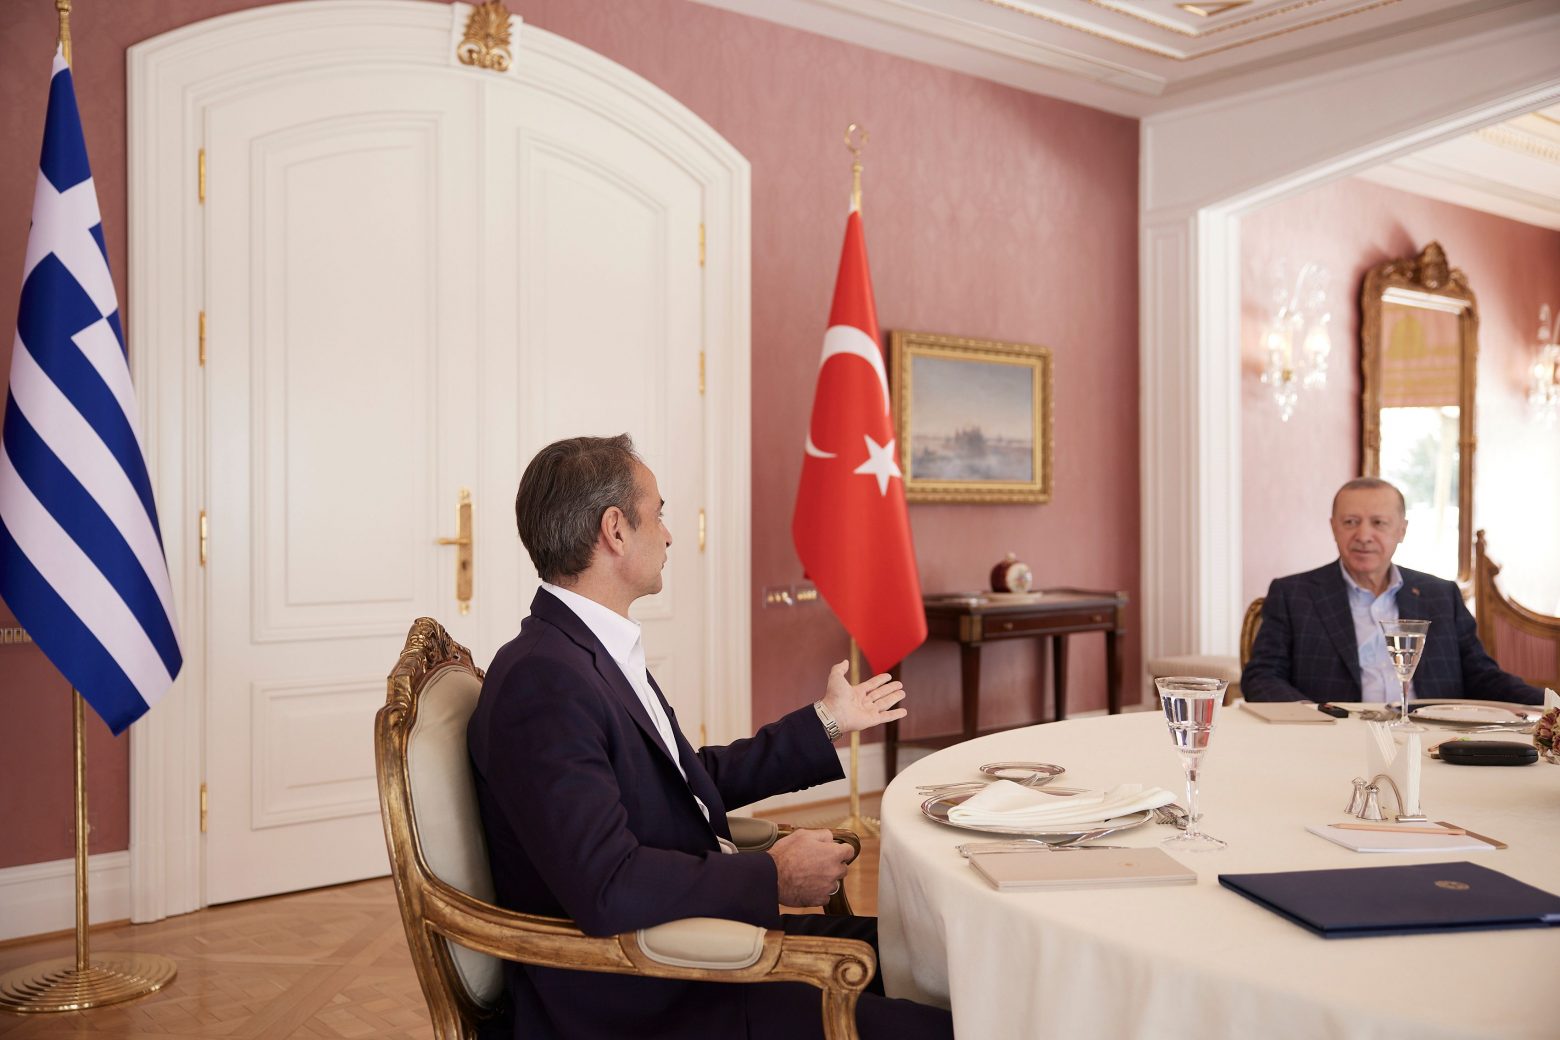 Υπάρχουν περιθώρια διαλόγου με την Τουρκία; - Που συμφωνούν και που διαφωνούν Μητσοτάκης, Τσίπρας και Ανδρουλάκης